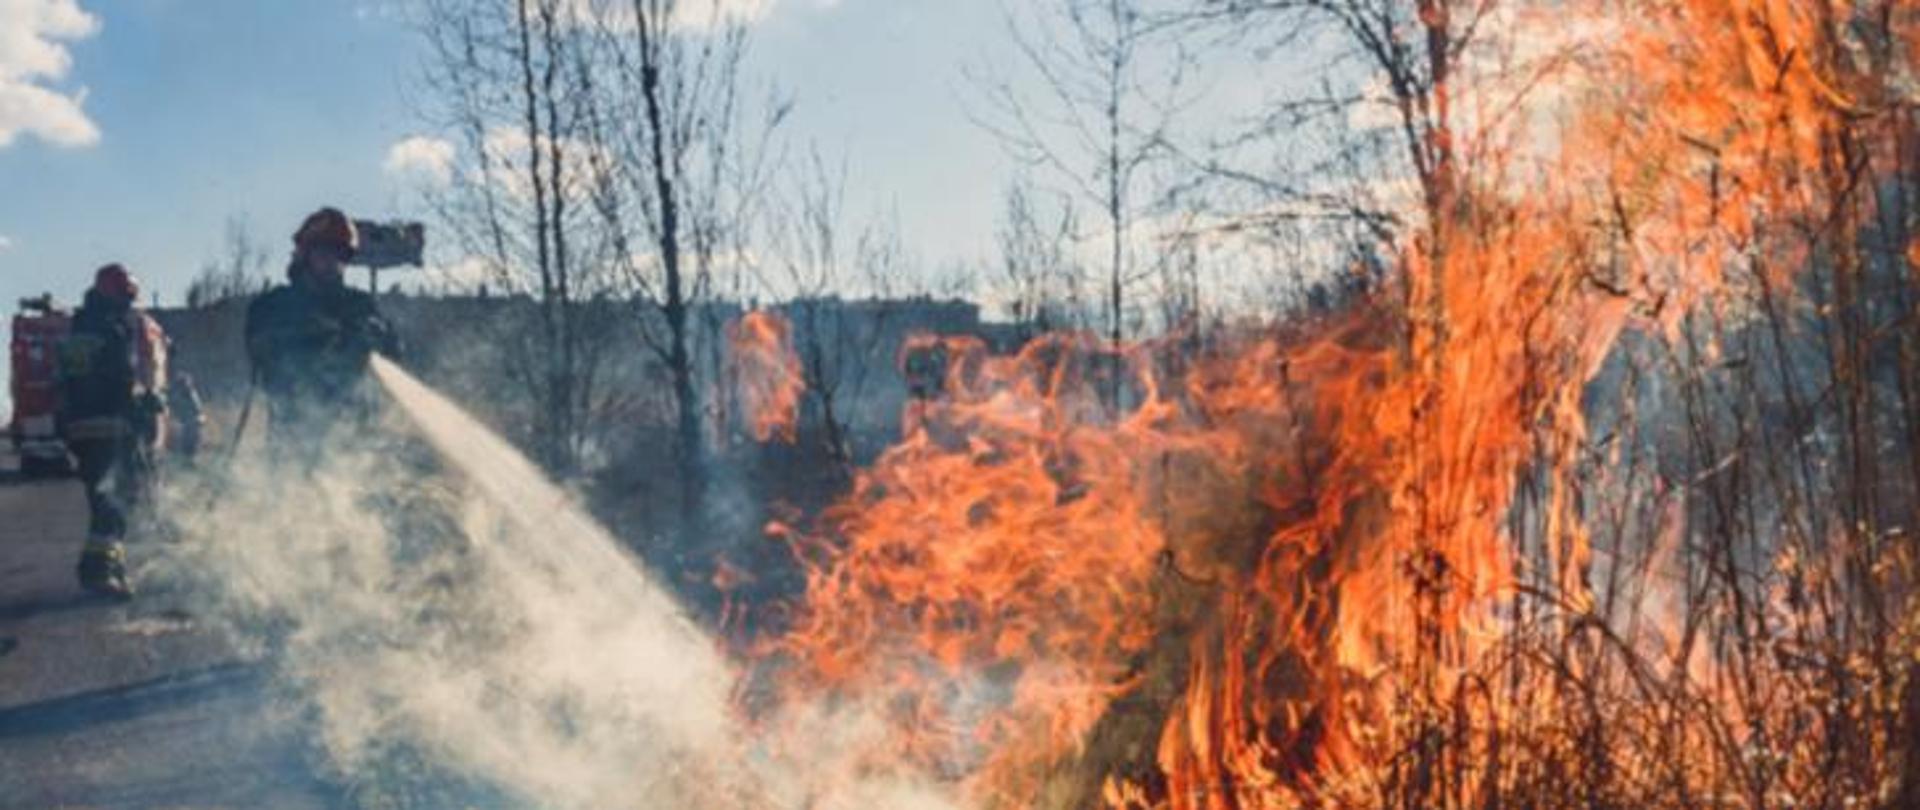 Dwaj strażacy gaszą pożar trawy na nieużytkach. W prawej części zdjęcia płonąca wysoka trawa, w lewej części strażacy z gaszący wodą. W oddali suche, wysokie drzewa.